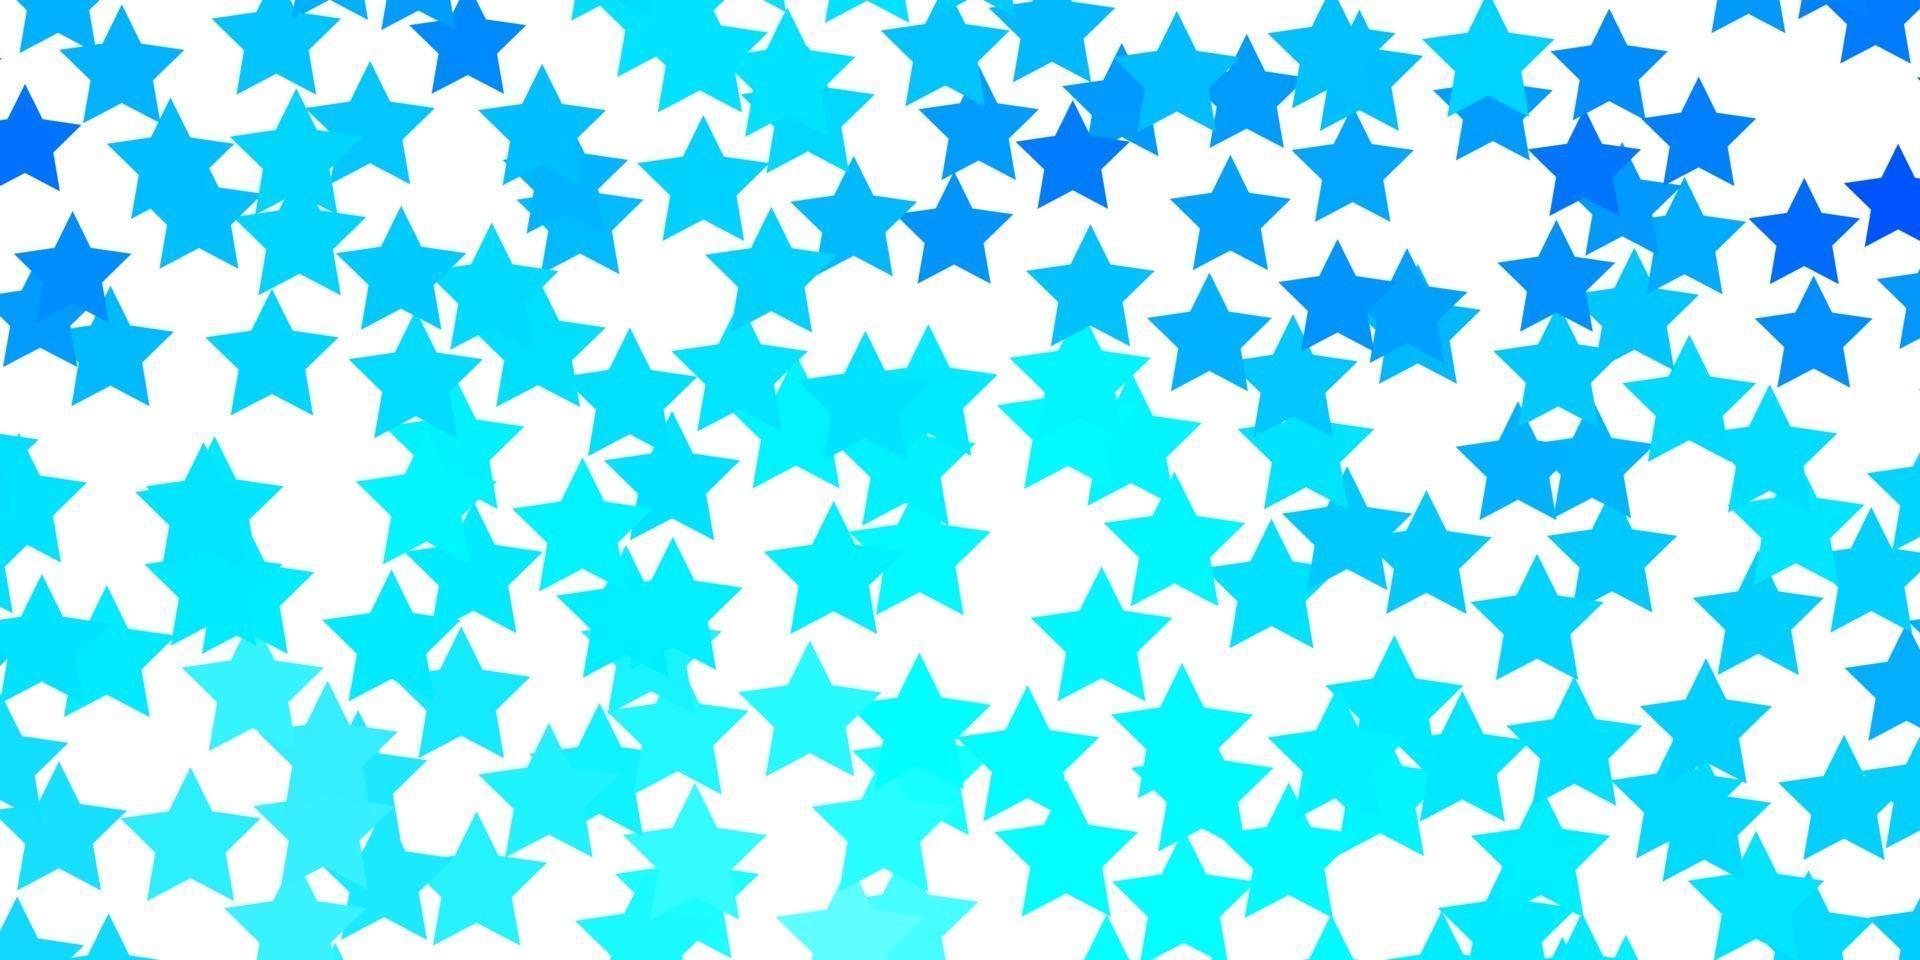 Fondo de vector azul claro con estrellas de colores.